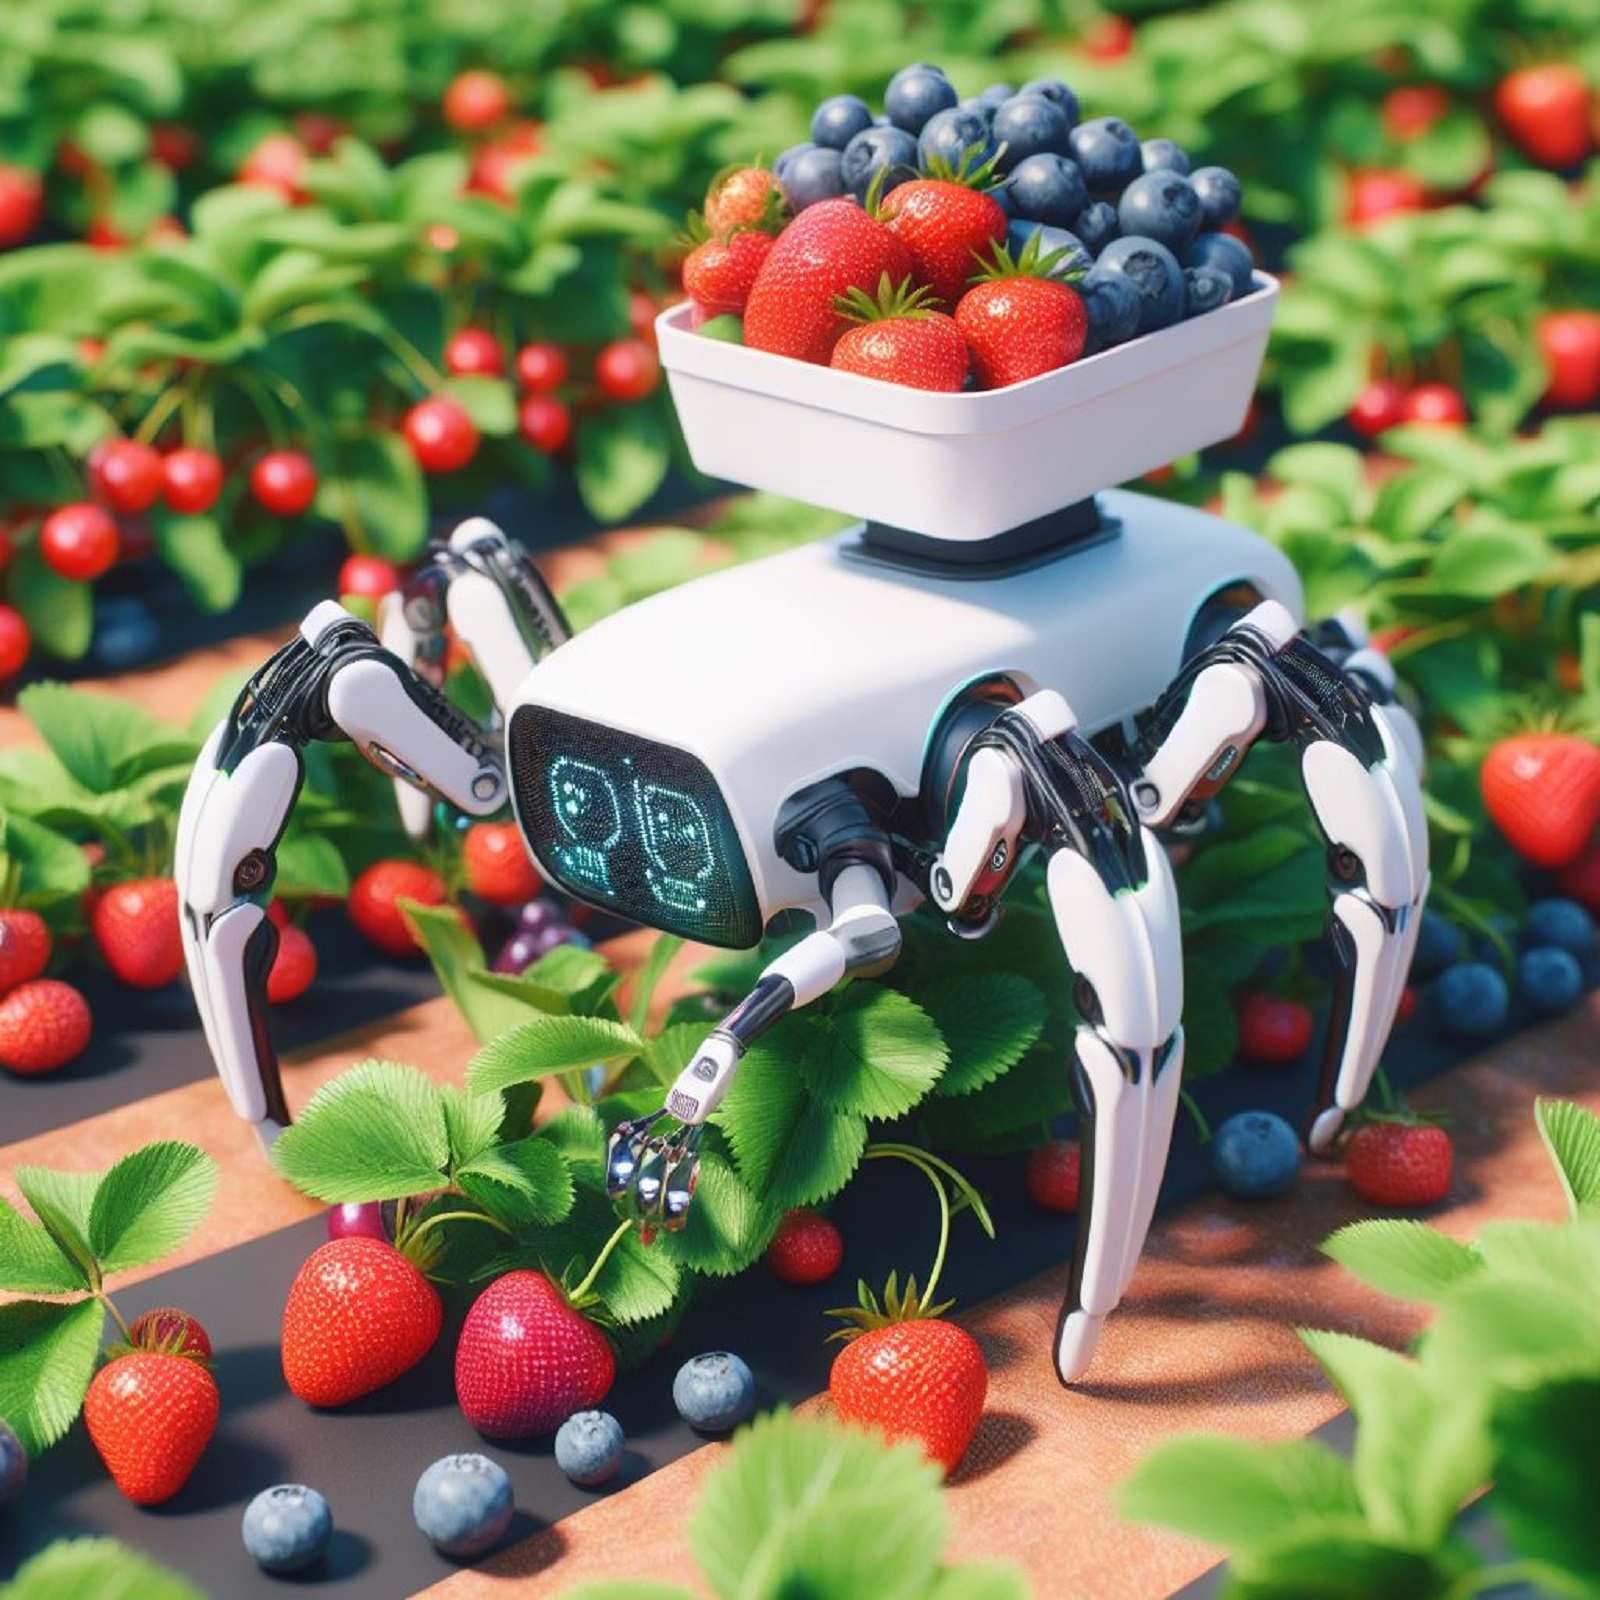 Hình ảnh minh họa một chú robot bò để hái trái cây